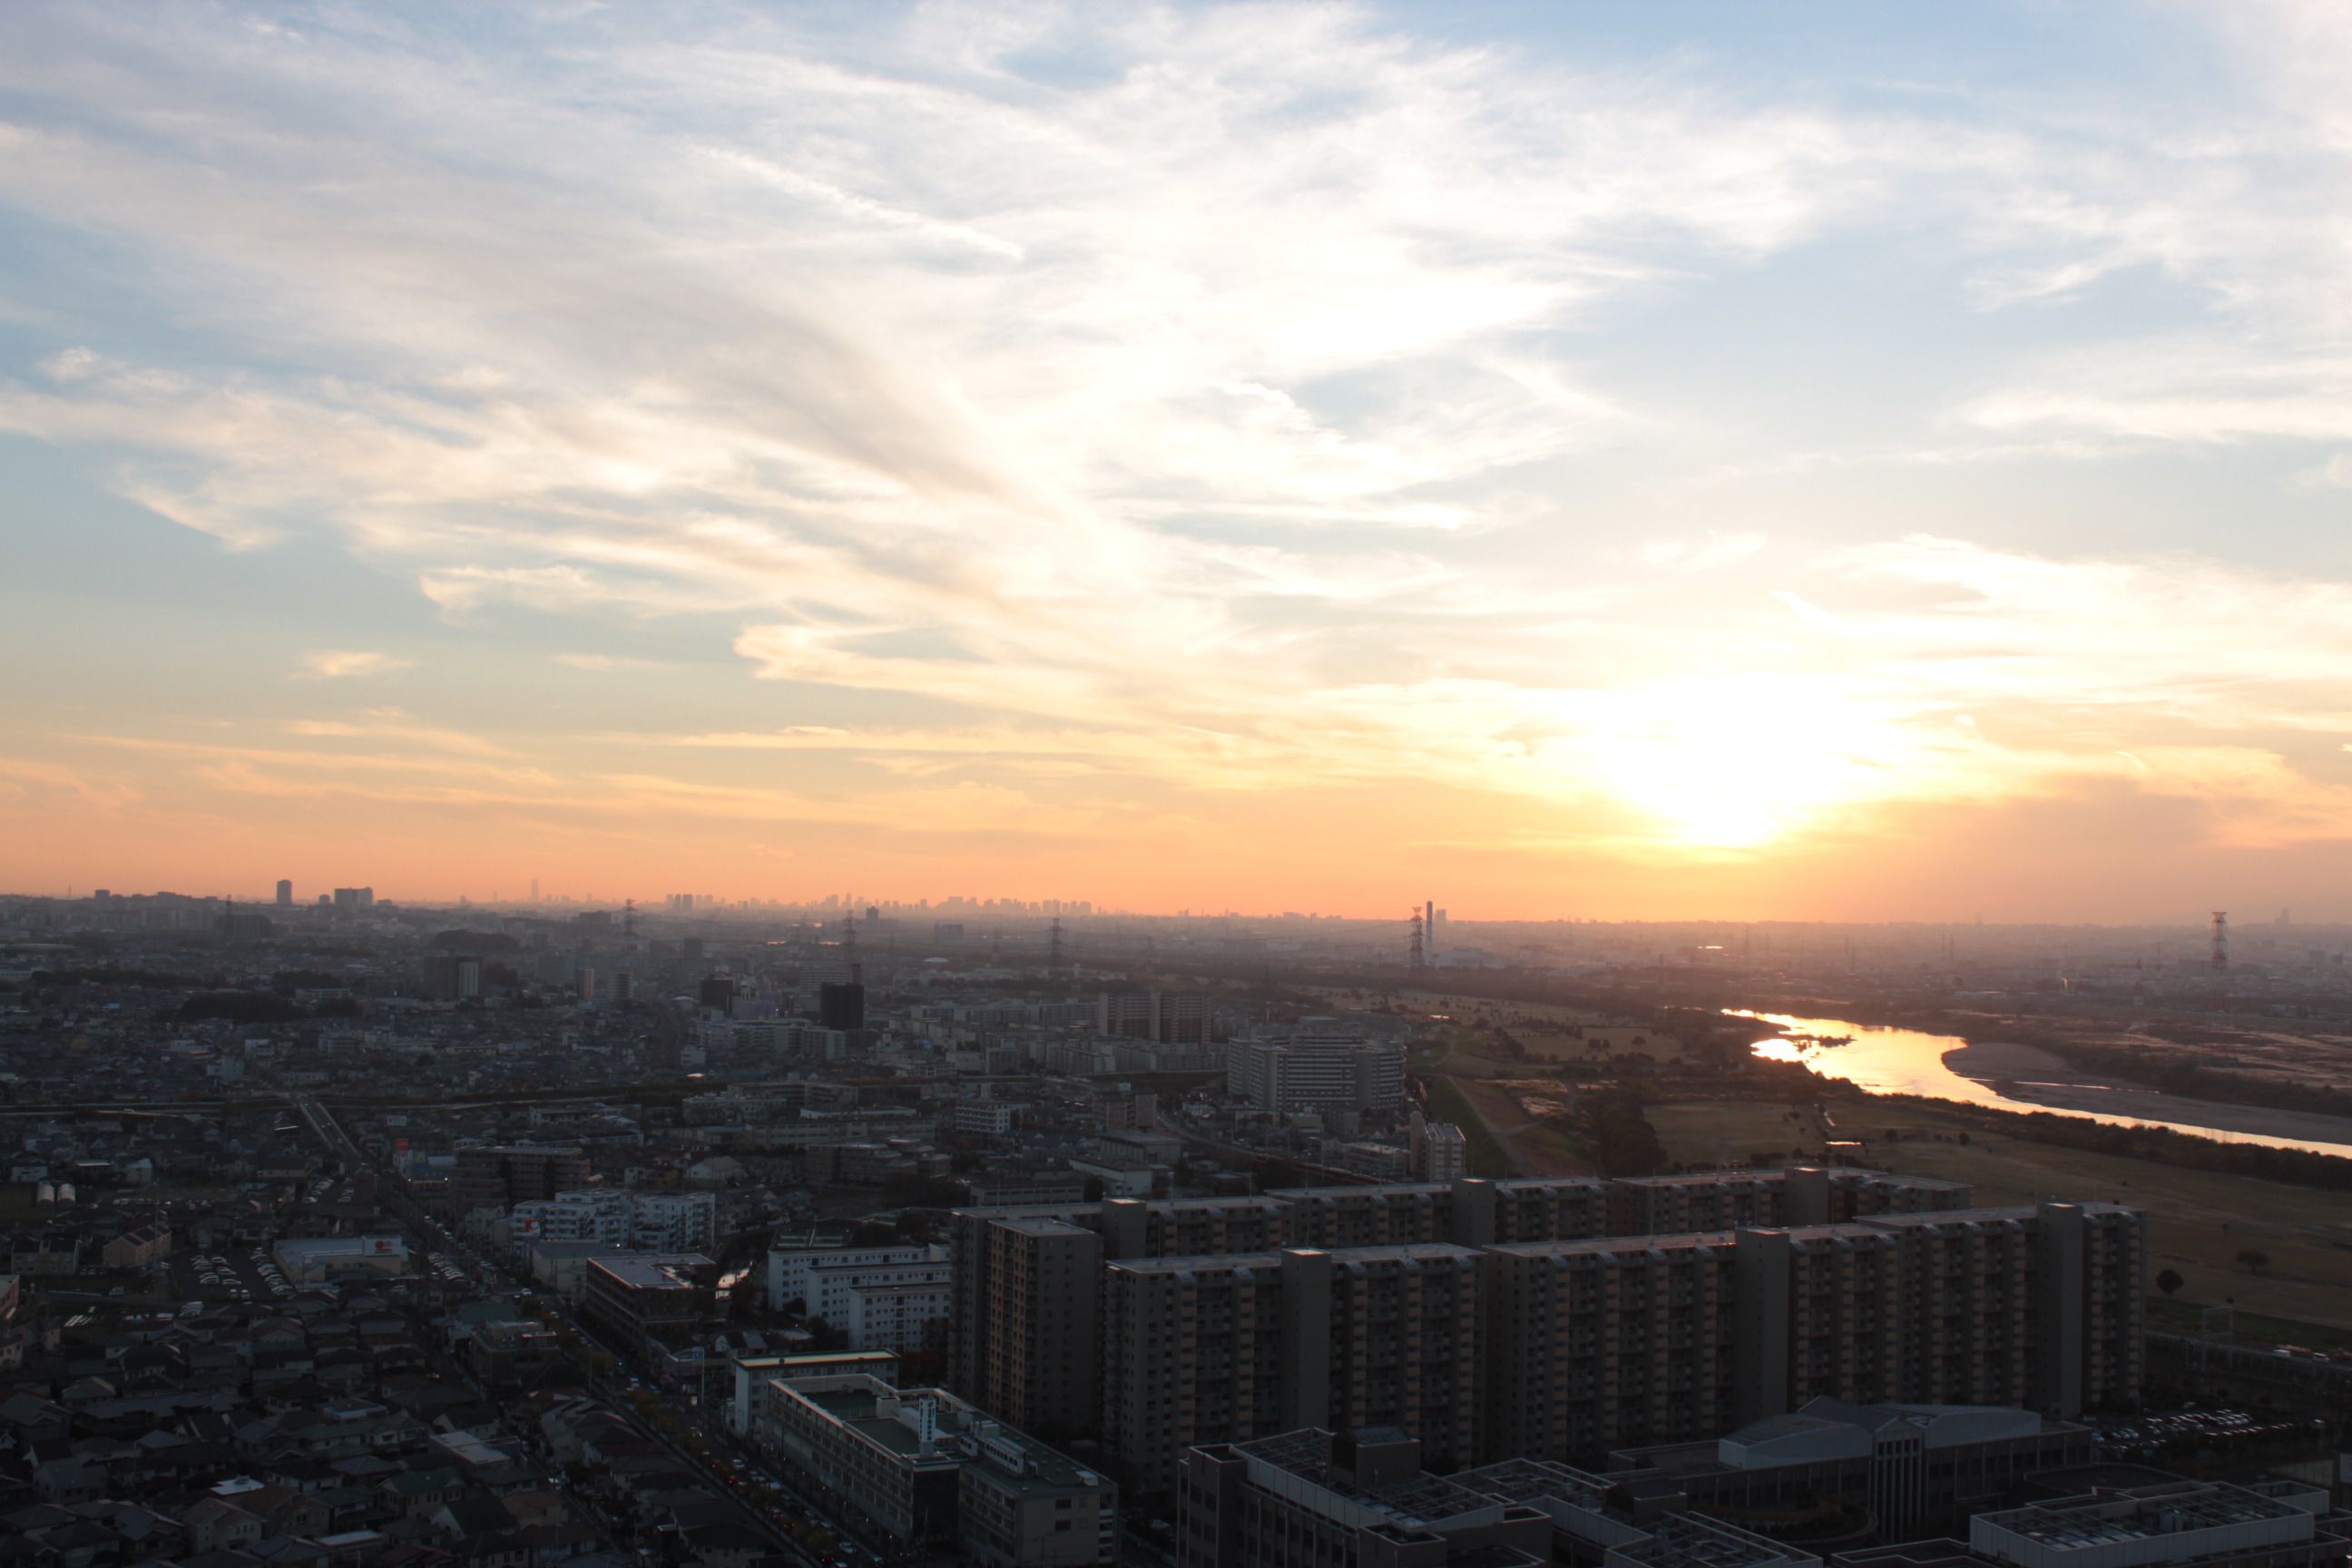 会場である、くずはタワーシティ・Tコート・スカイラウンジから眺めた夕日